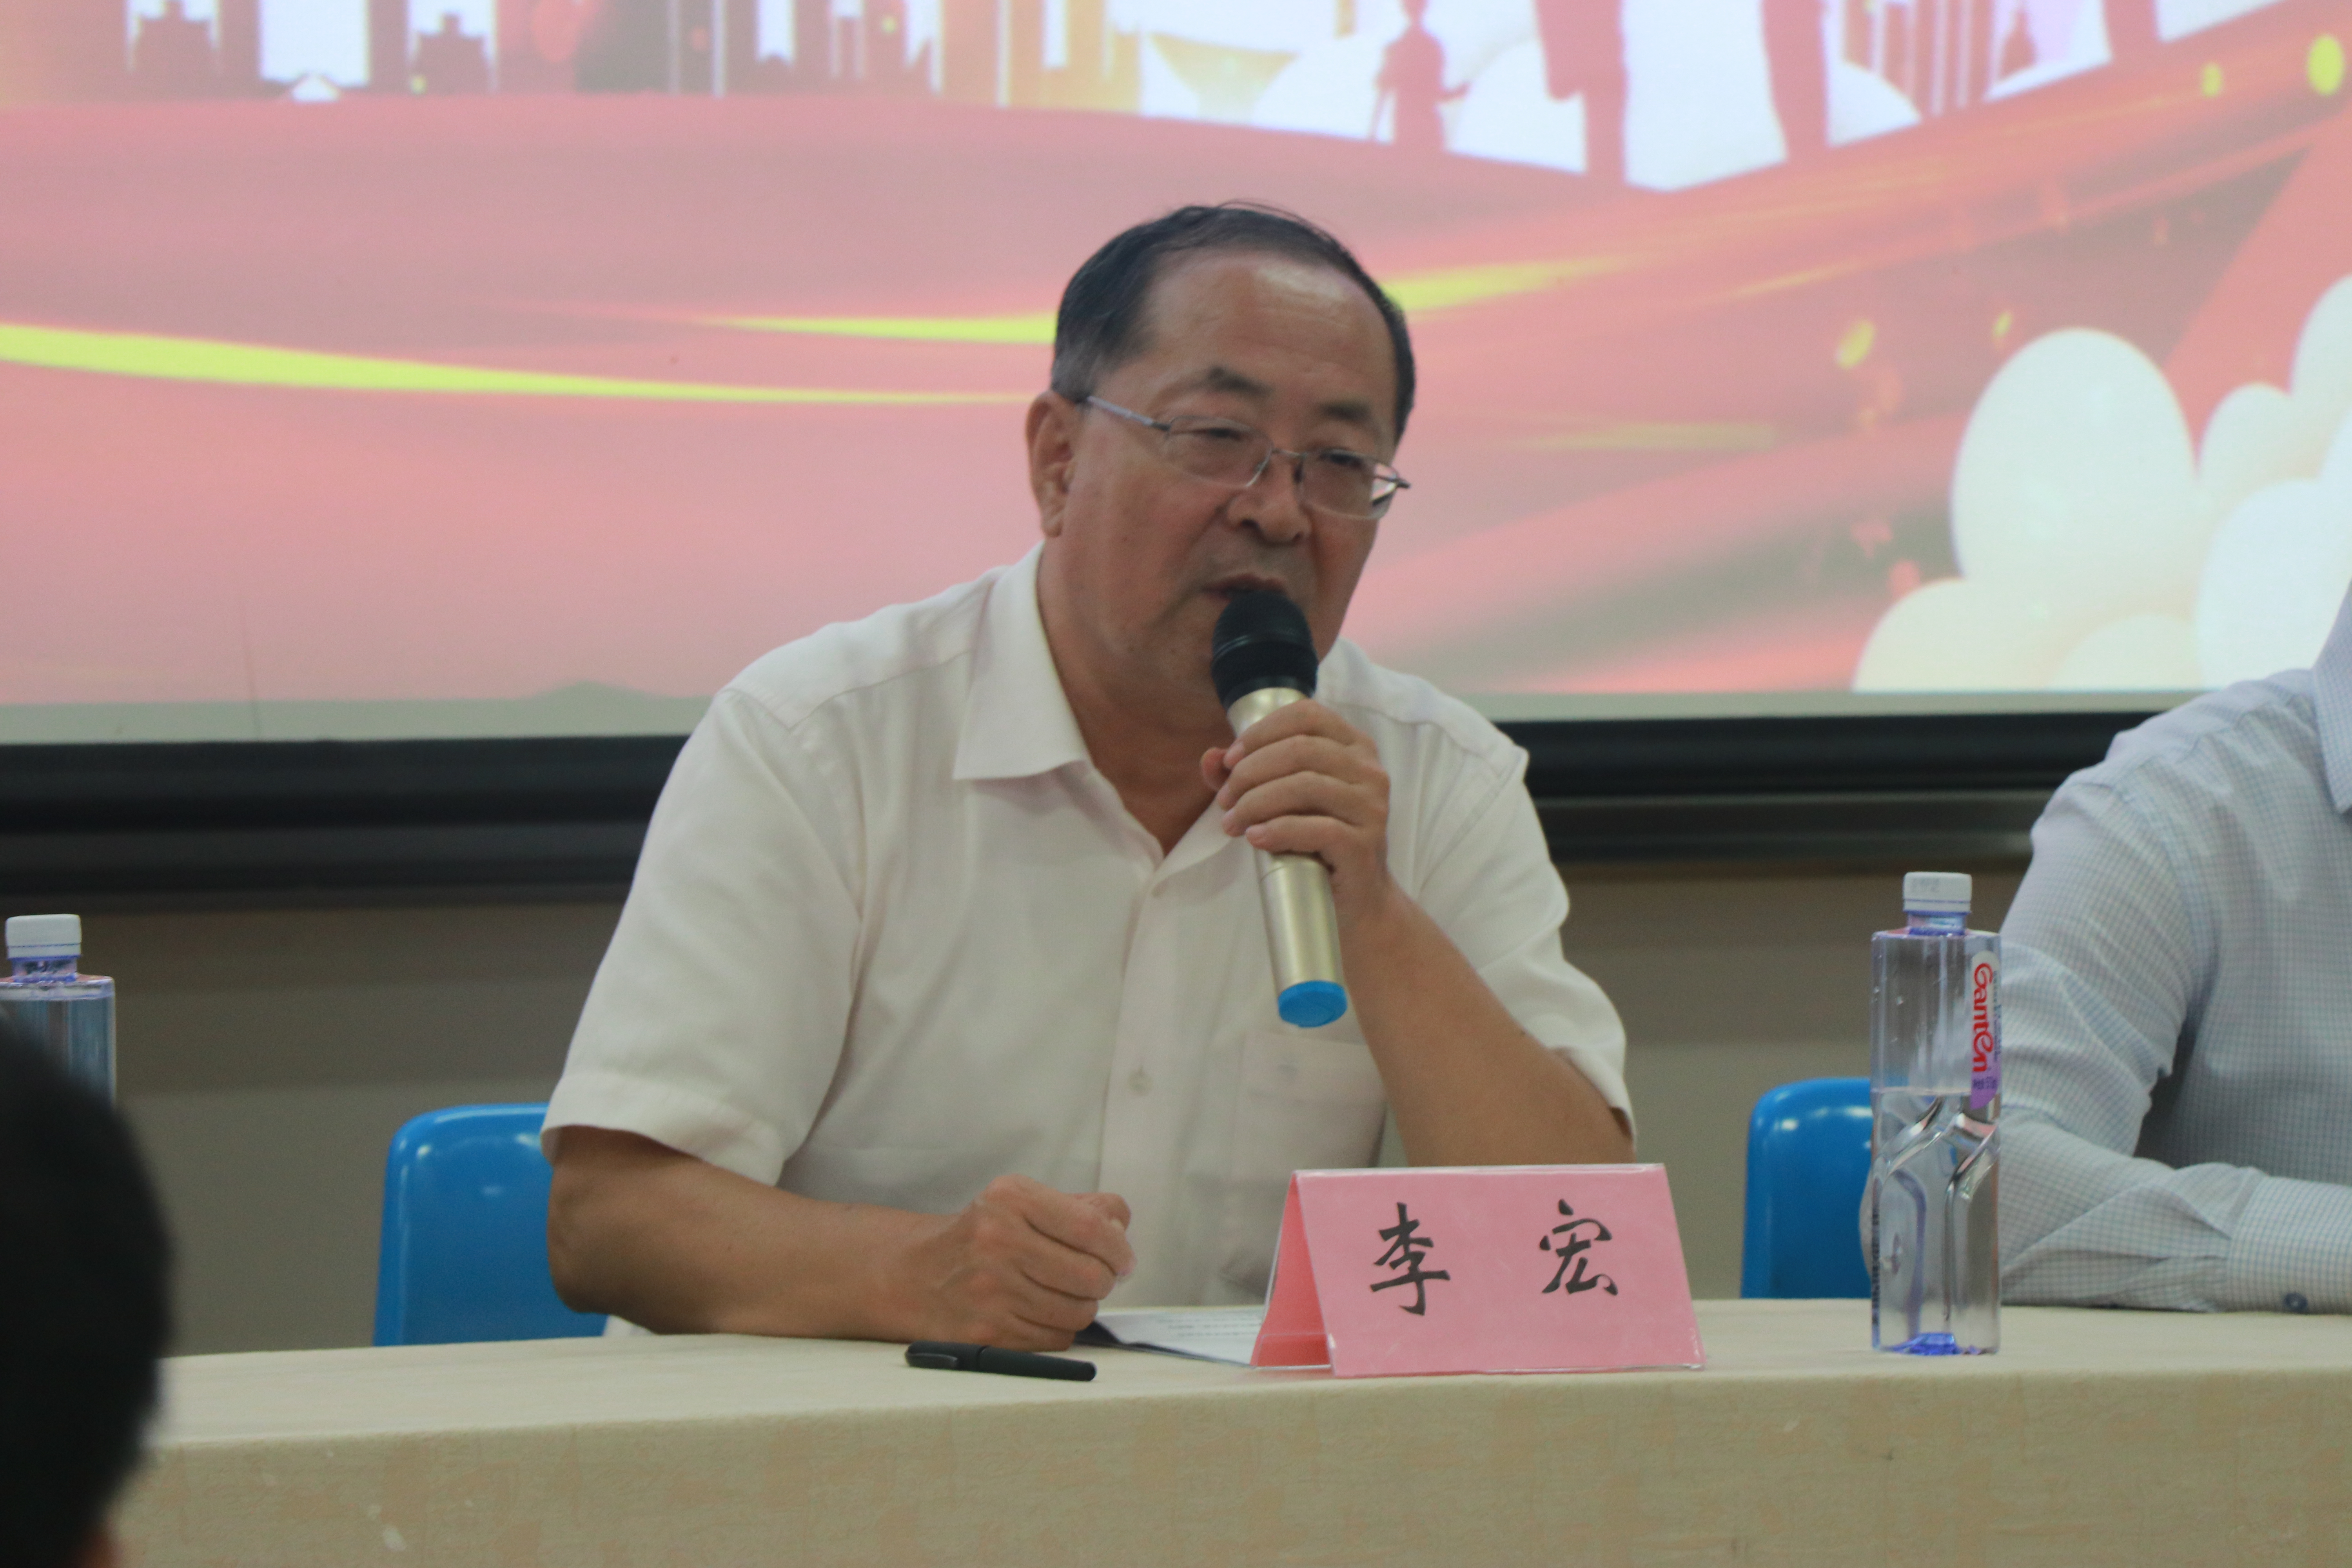 物理科学与技术学院党总支书记李宏教授出席典礼并讲话